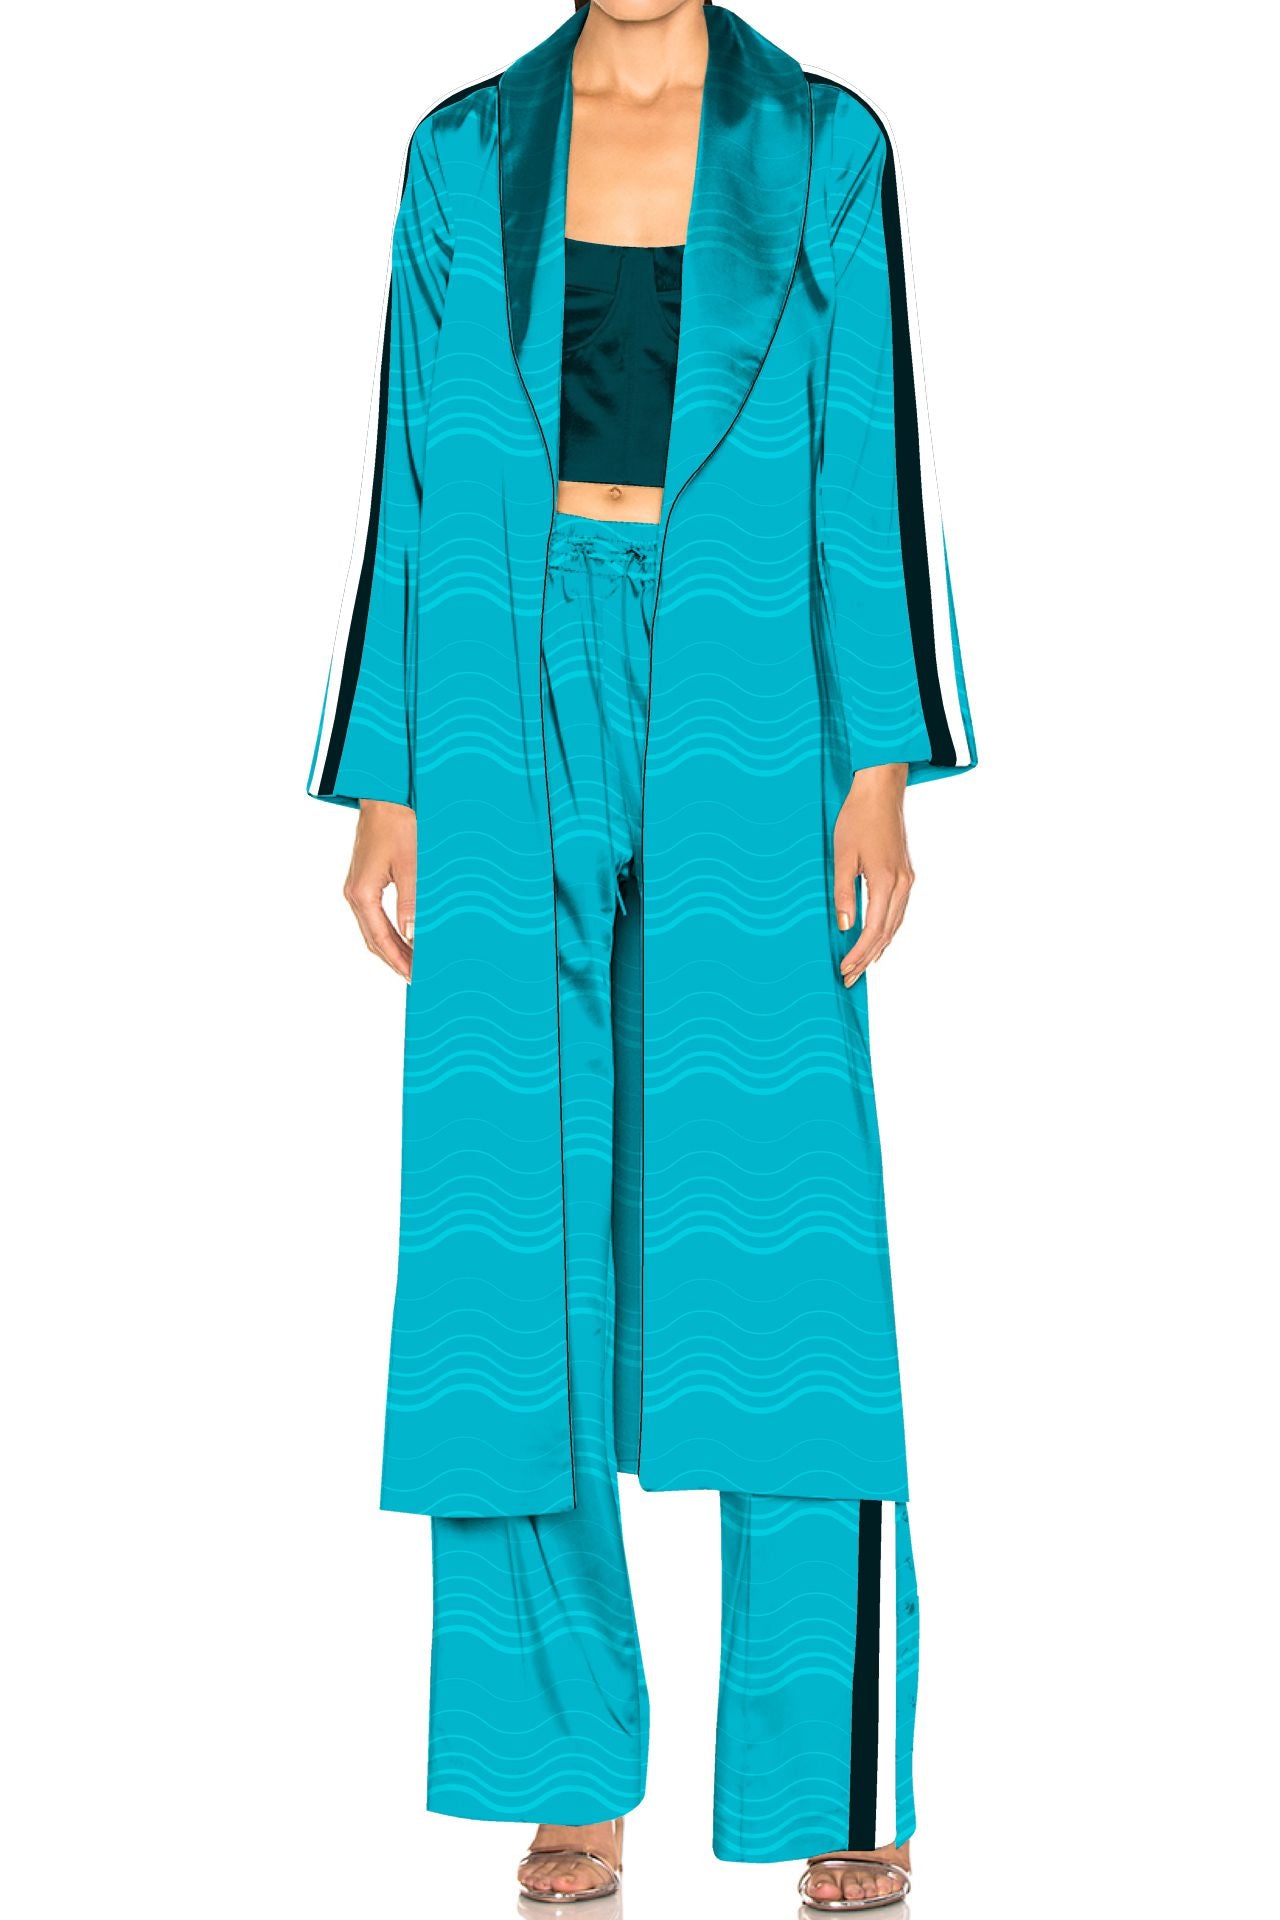 "pajamas matching robe" "silk robe pajama set" "Kyle X Shahida" "women's pajama and robe set"